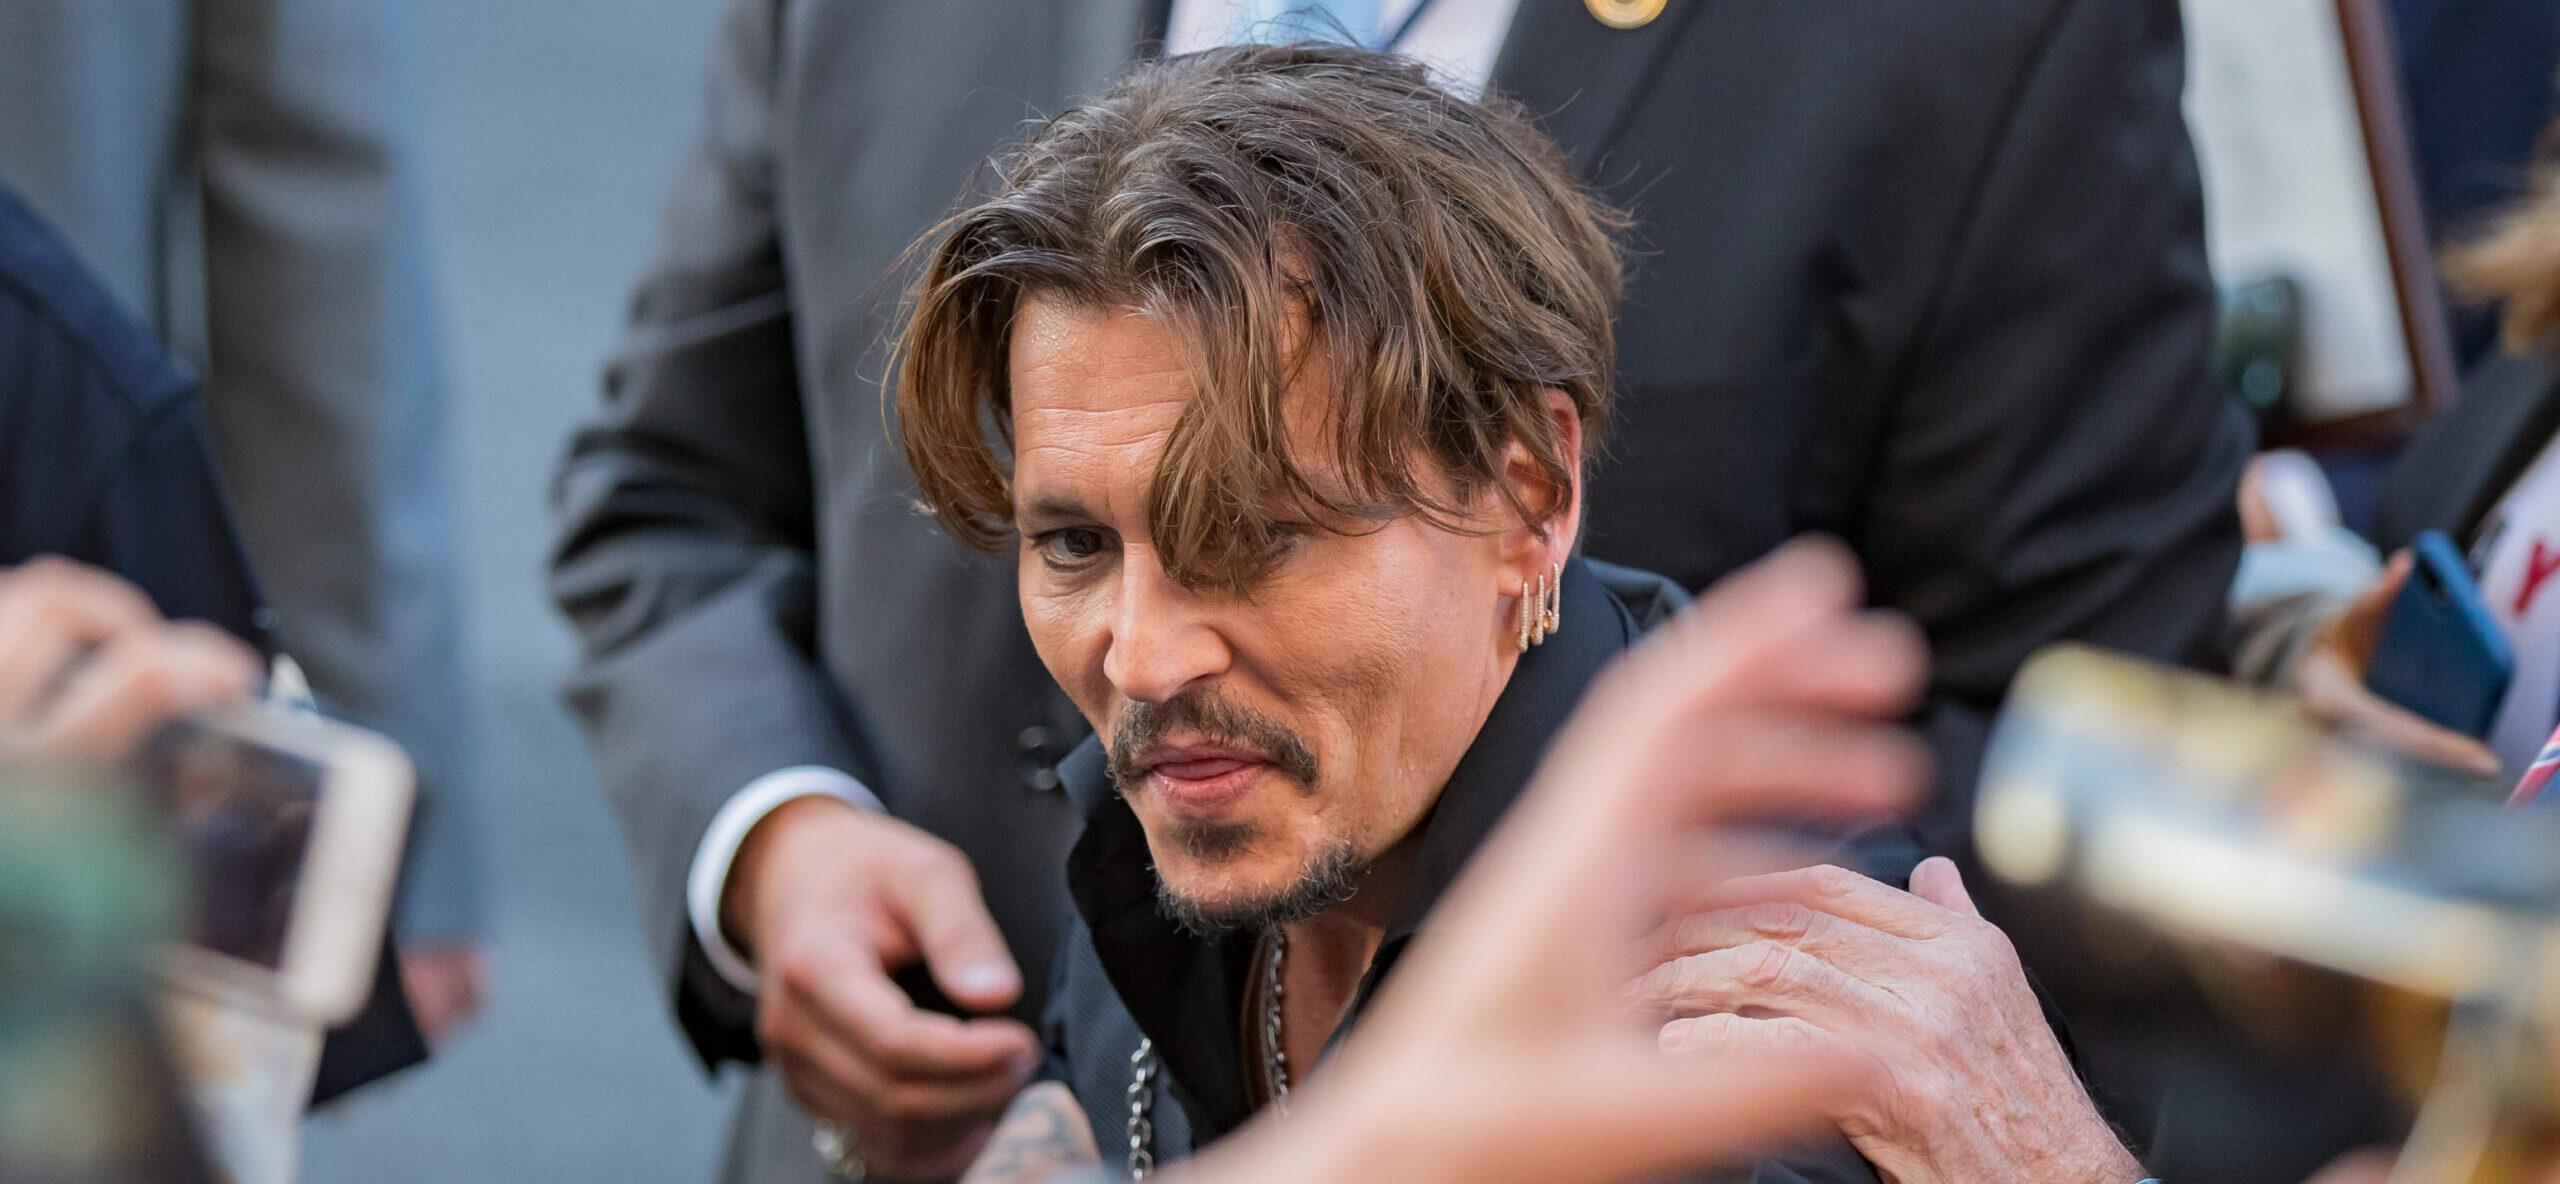 Johnny Depp greets fans